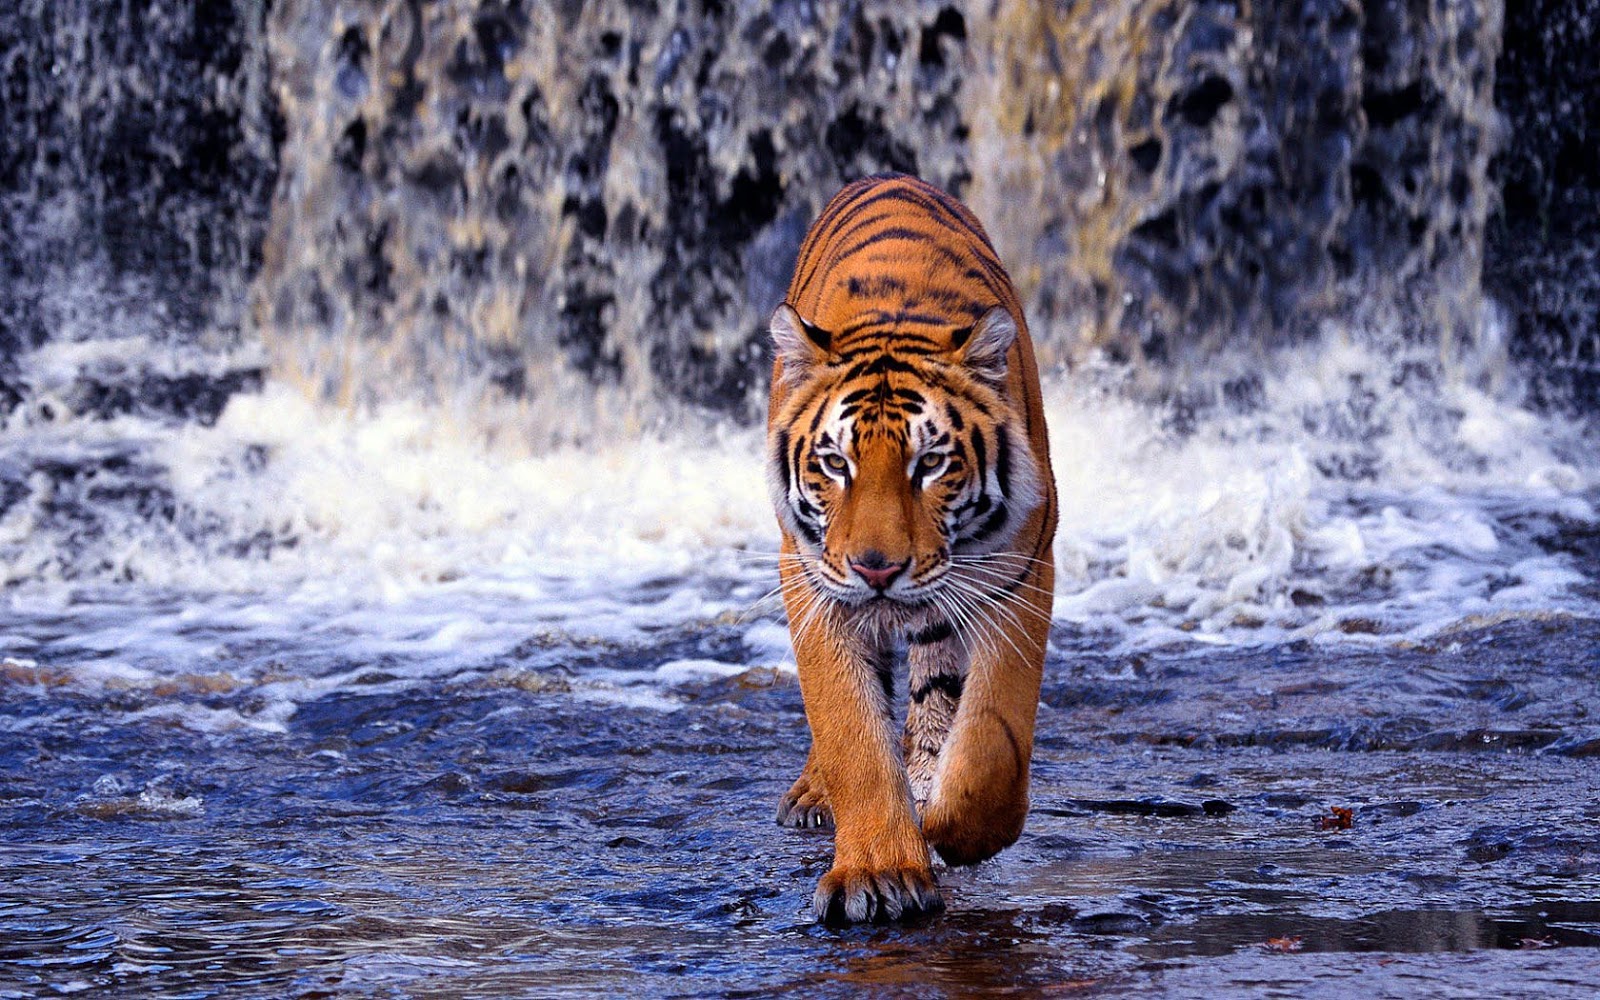 43+] Tiger in Water Wallpaper - WallpaperSafari